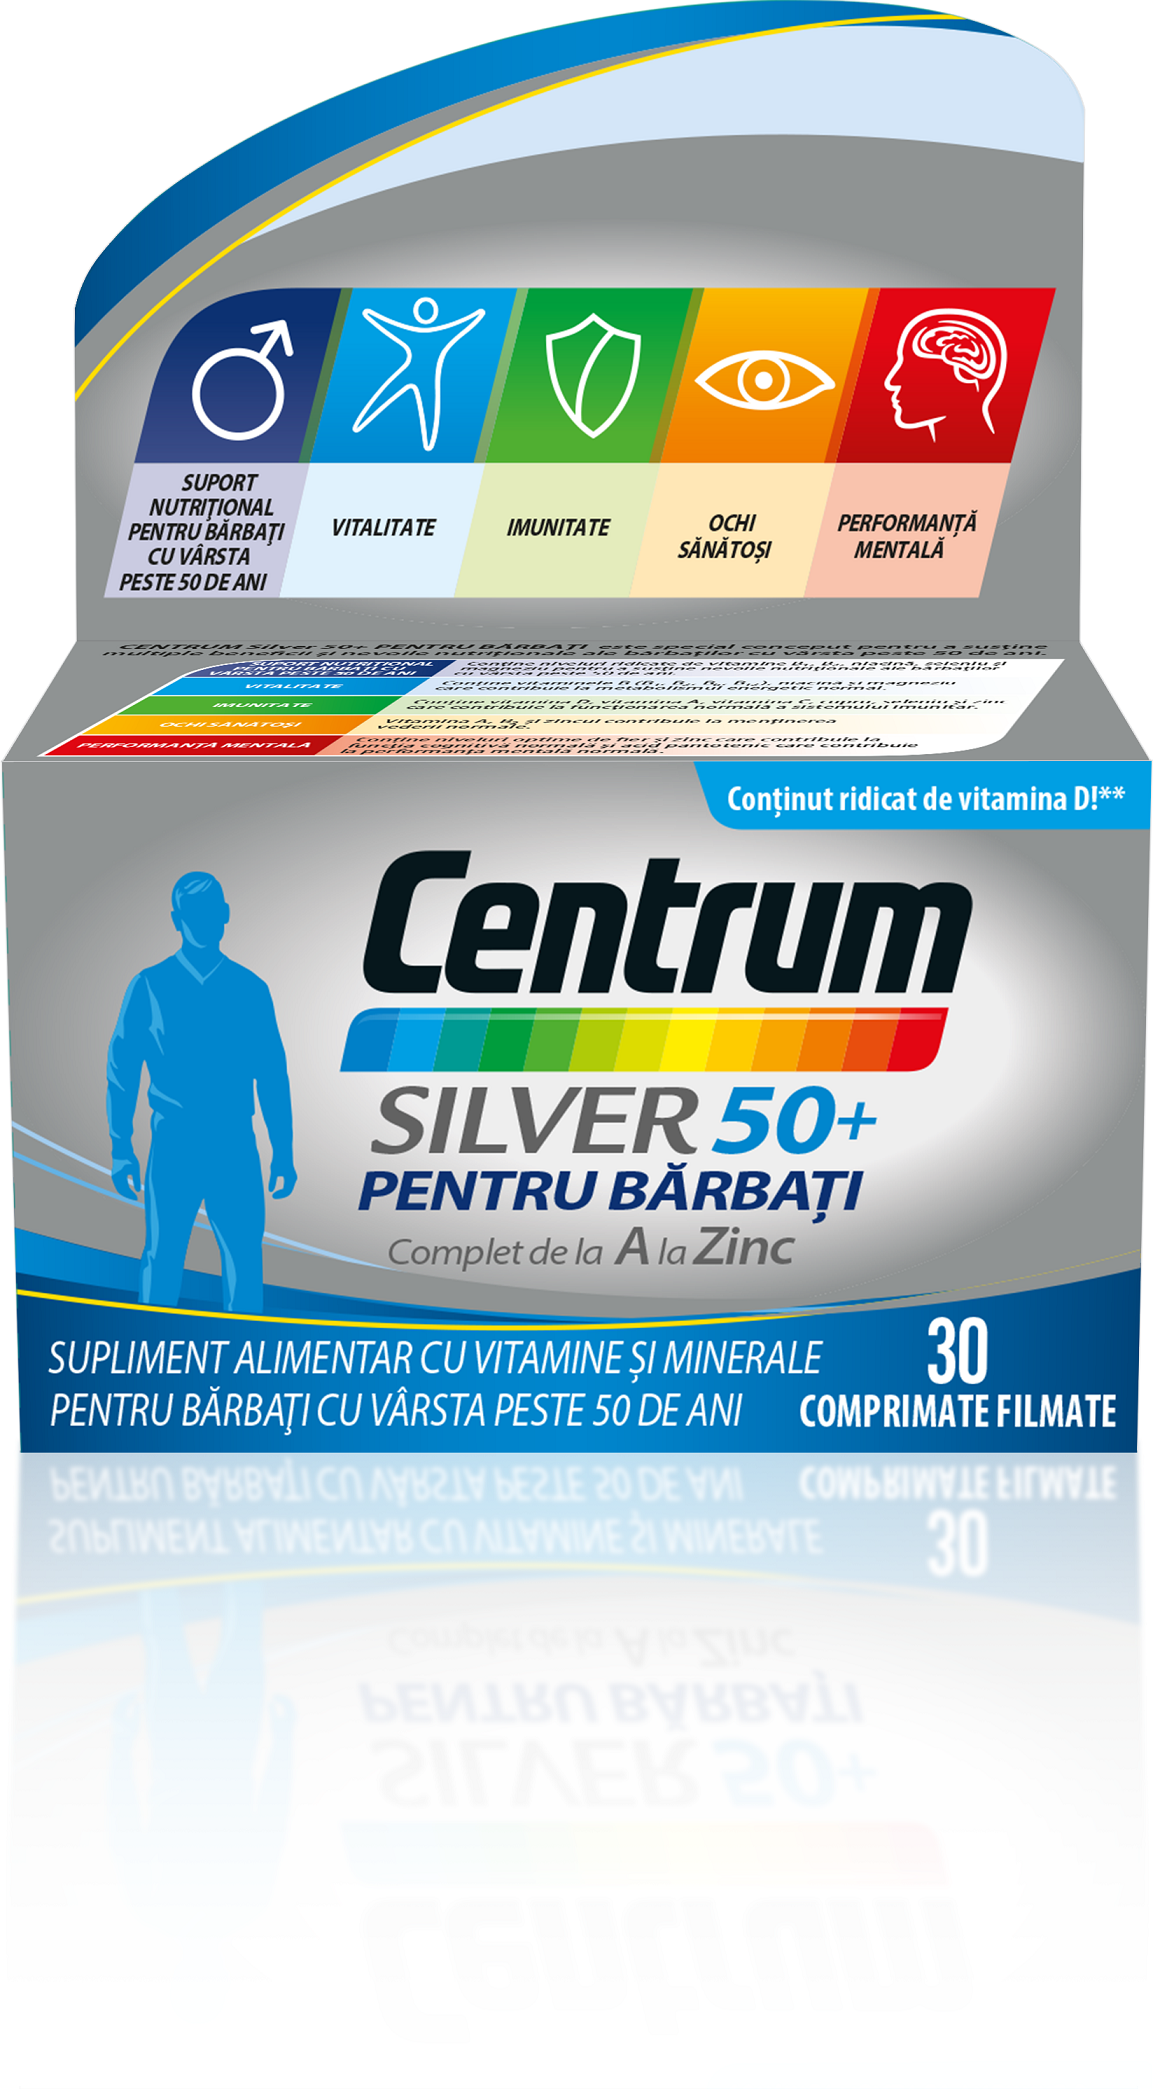 Adulti - Centrum Silver 50+ pentru bărbați complet de la A la Zinc, 30 comprimate, sinapis.ro